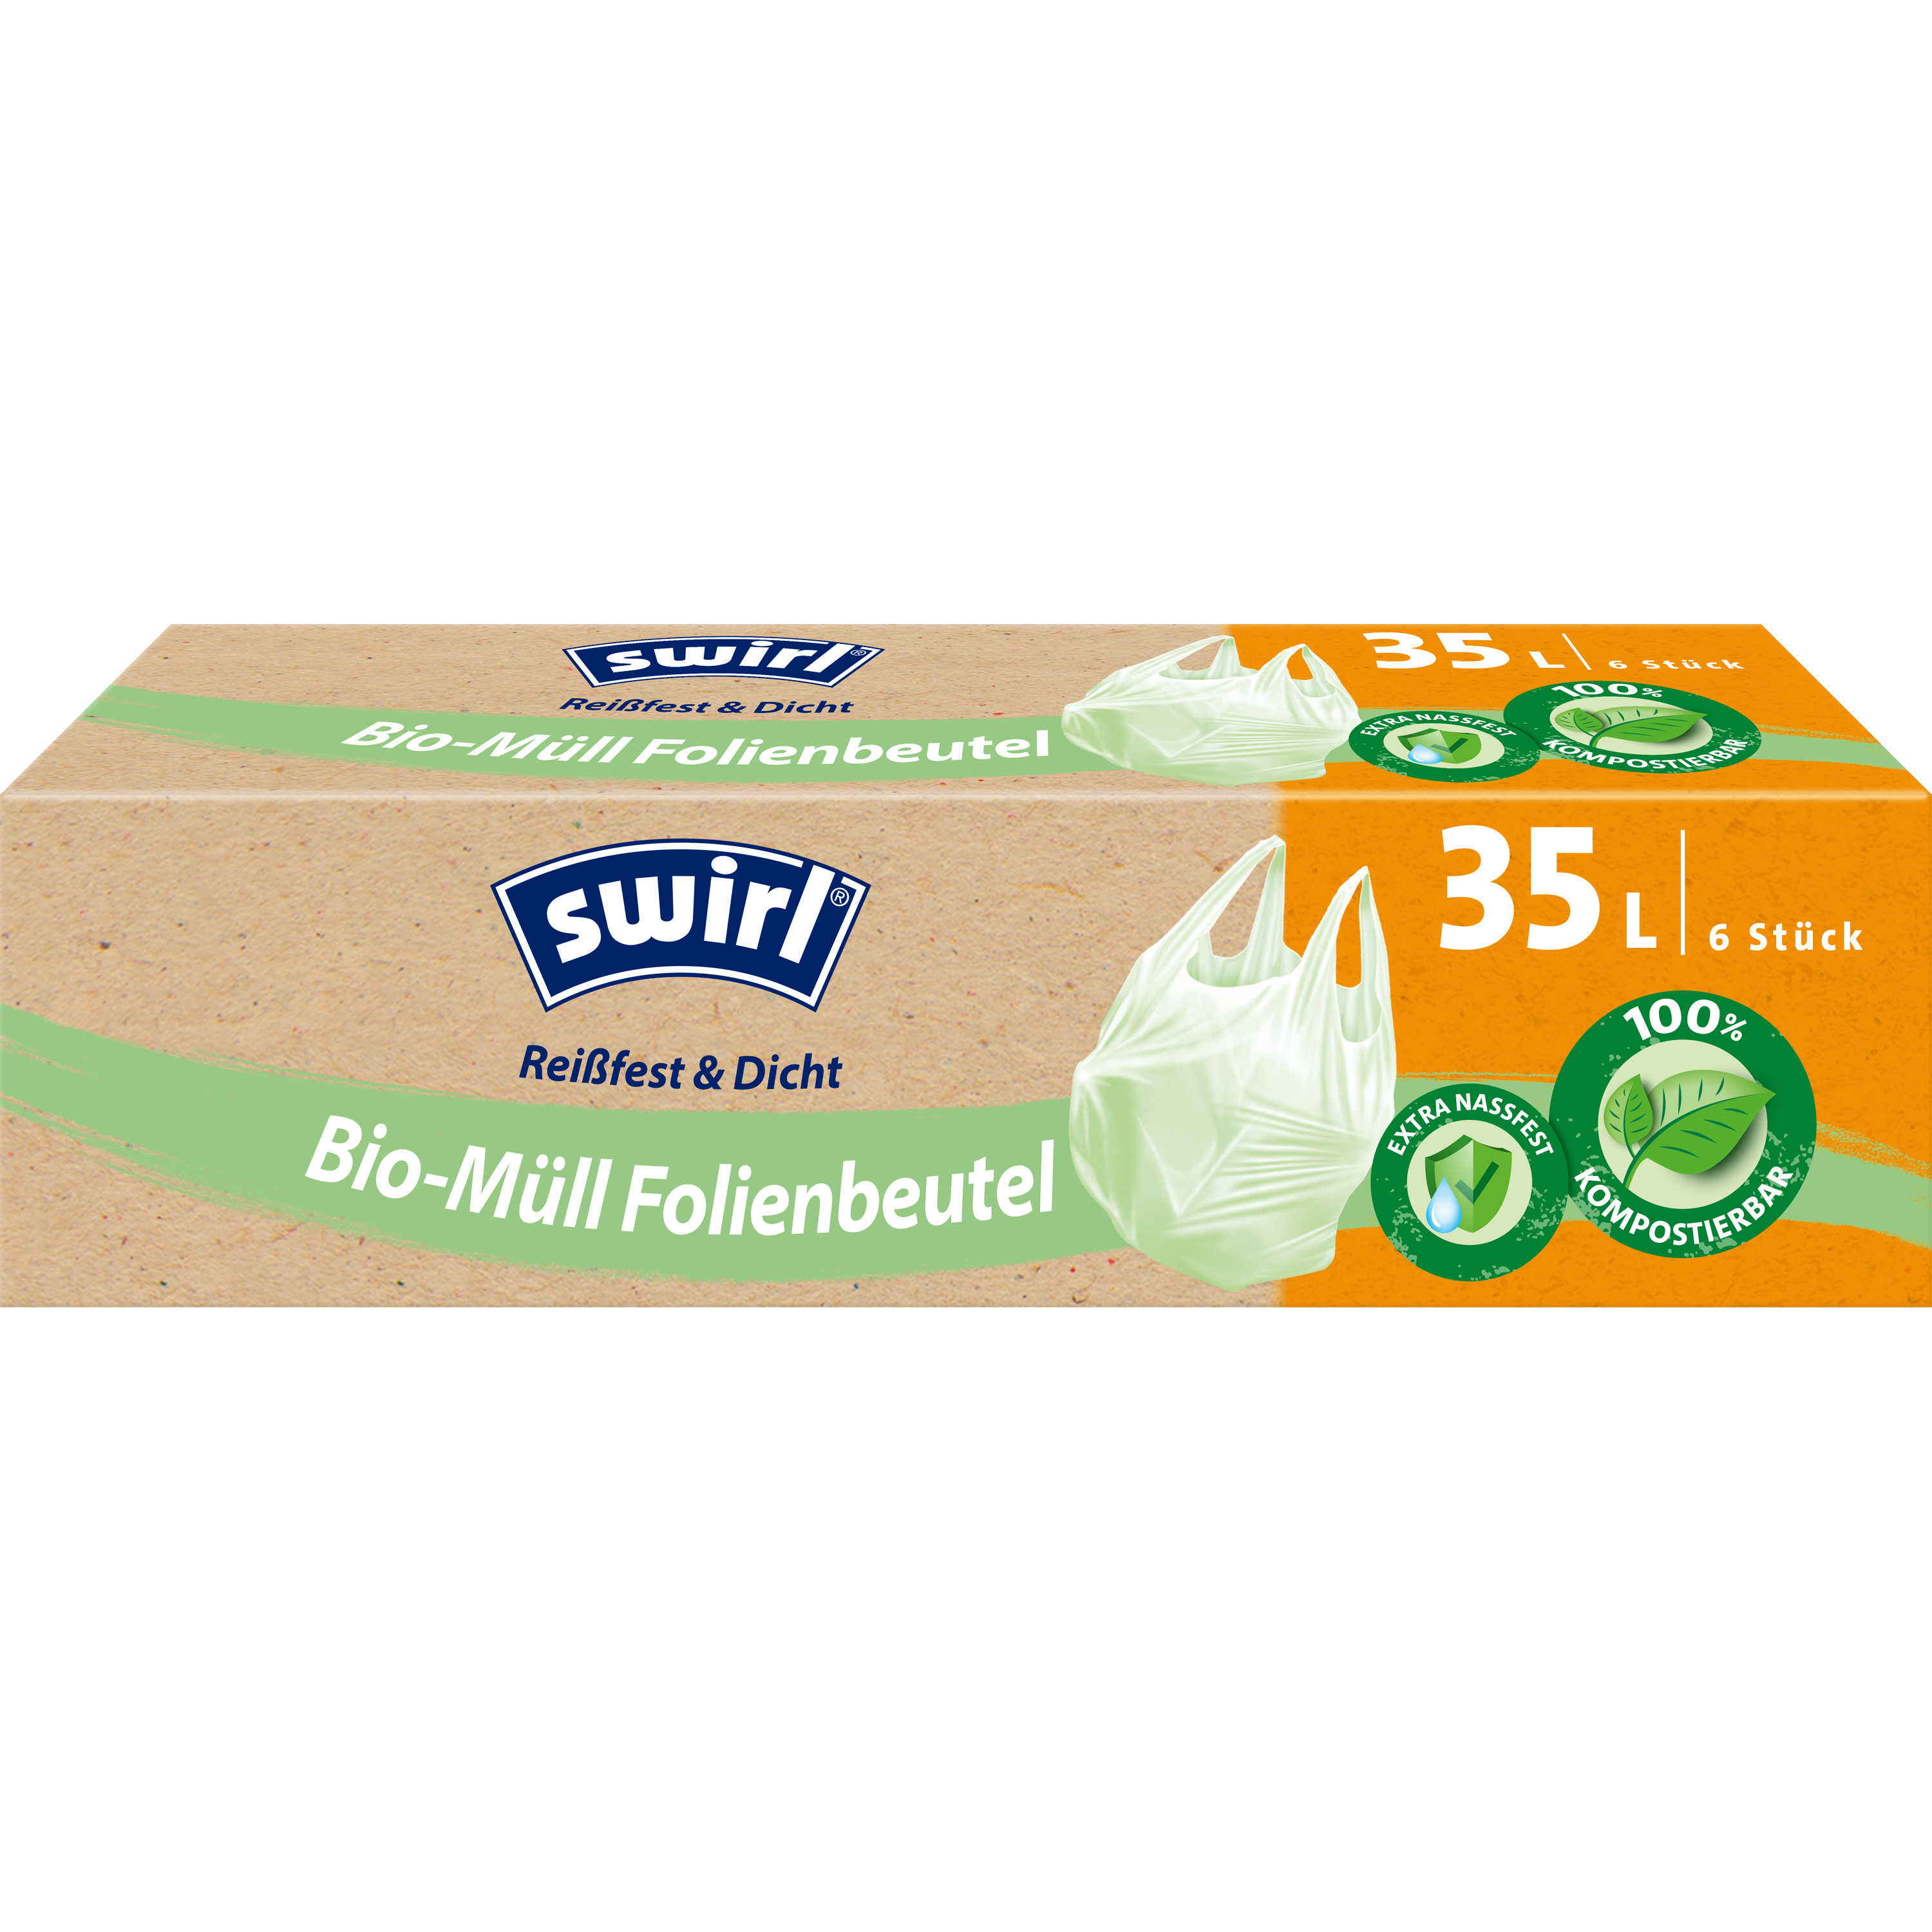 Swirl Bio-Müll-Folienbeutel, 35 L